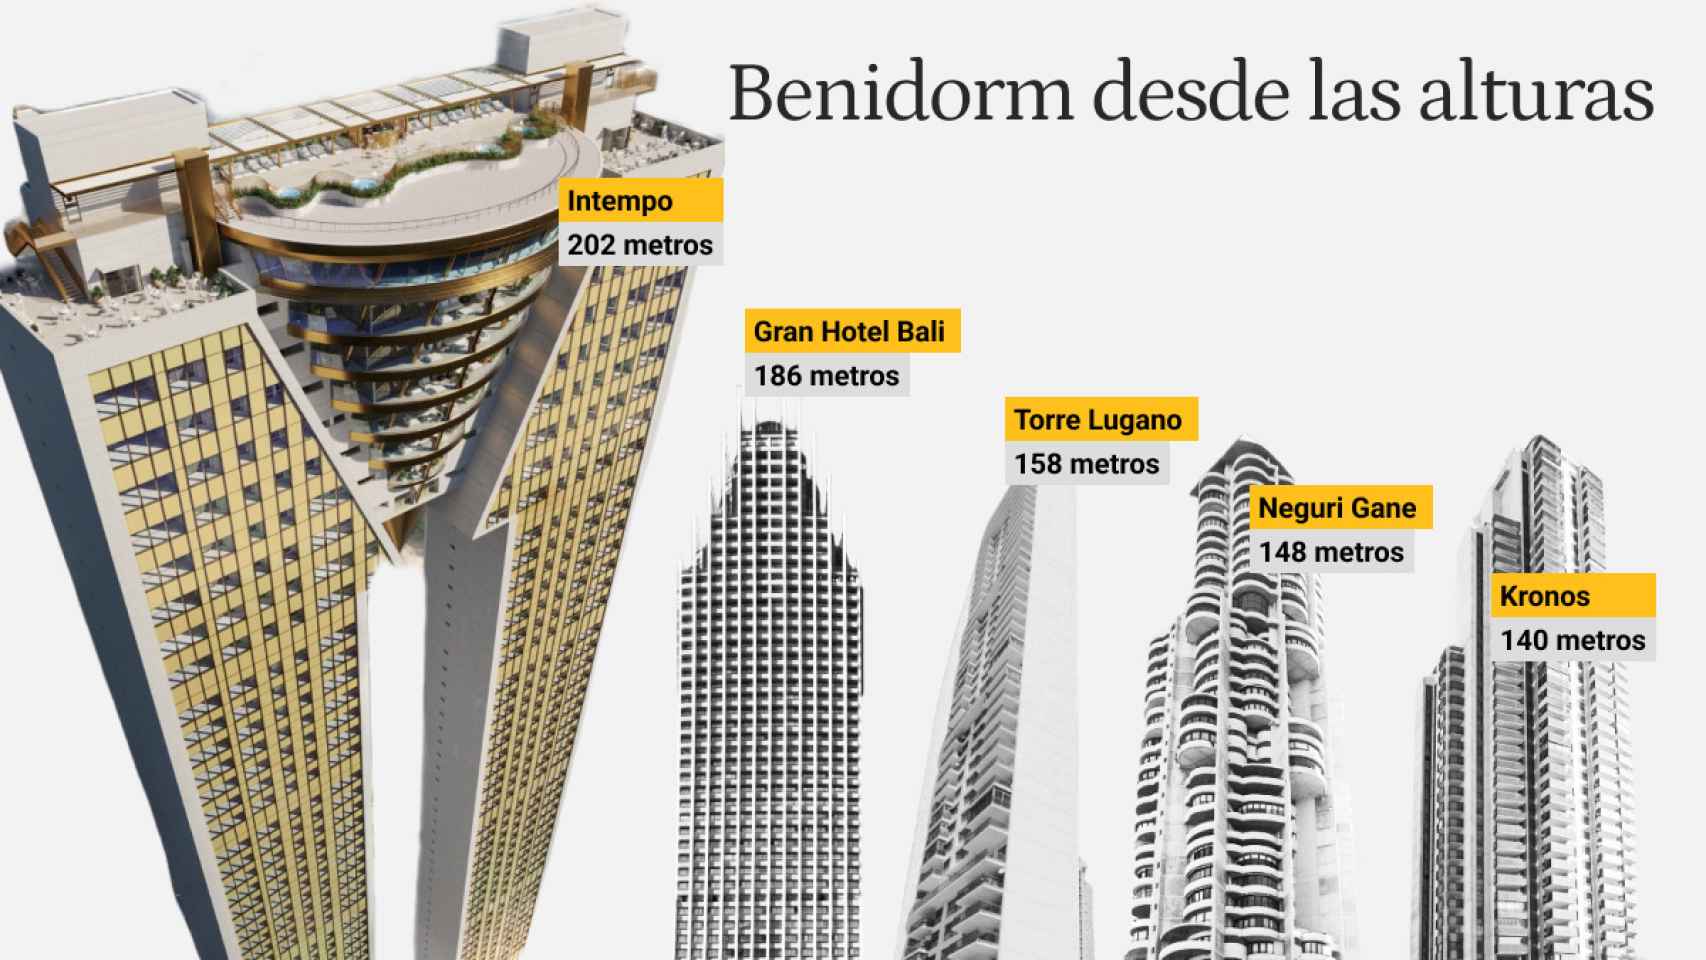 Los edificios más altos de Benidorm.